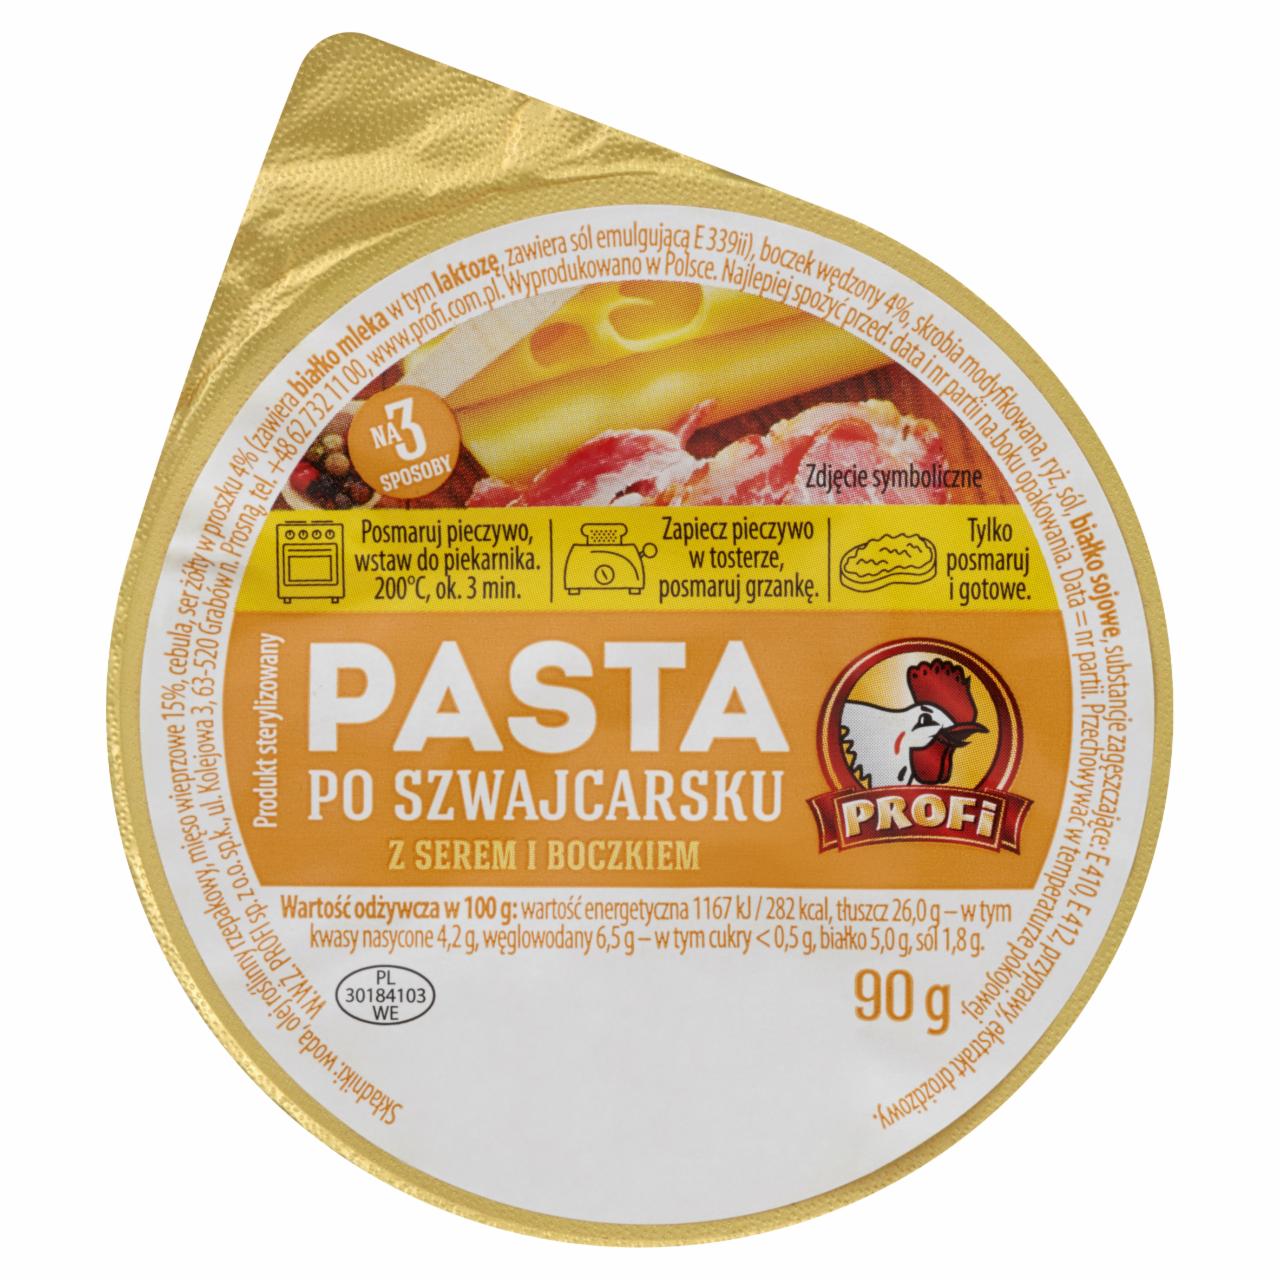 Zdjęcia - Profi Pasta po szwajcarsku z serem i boczkiem 90 g